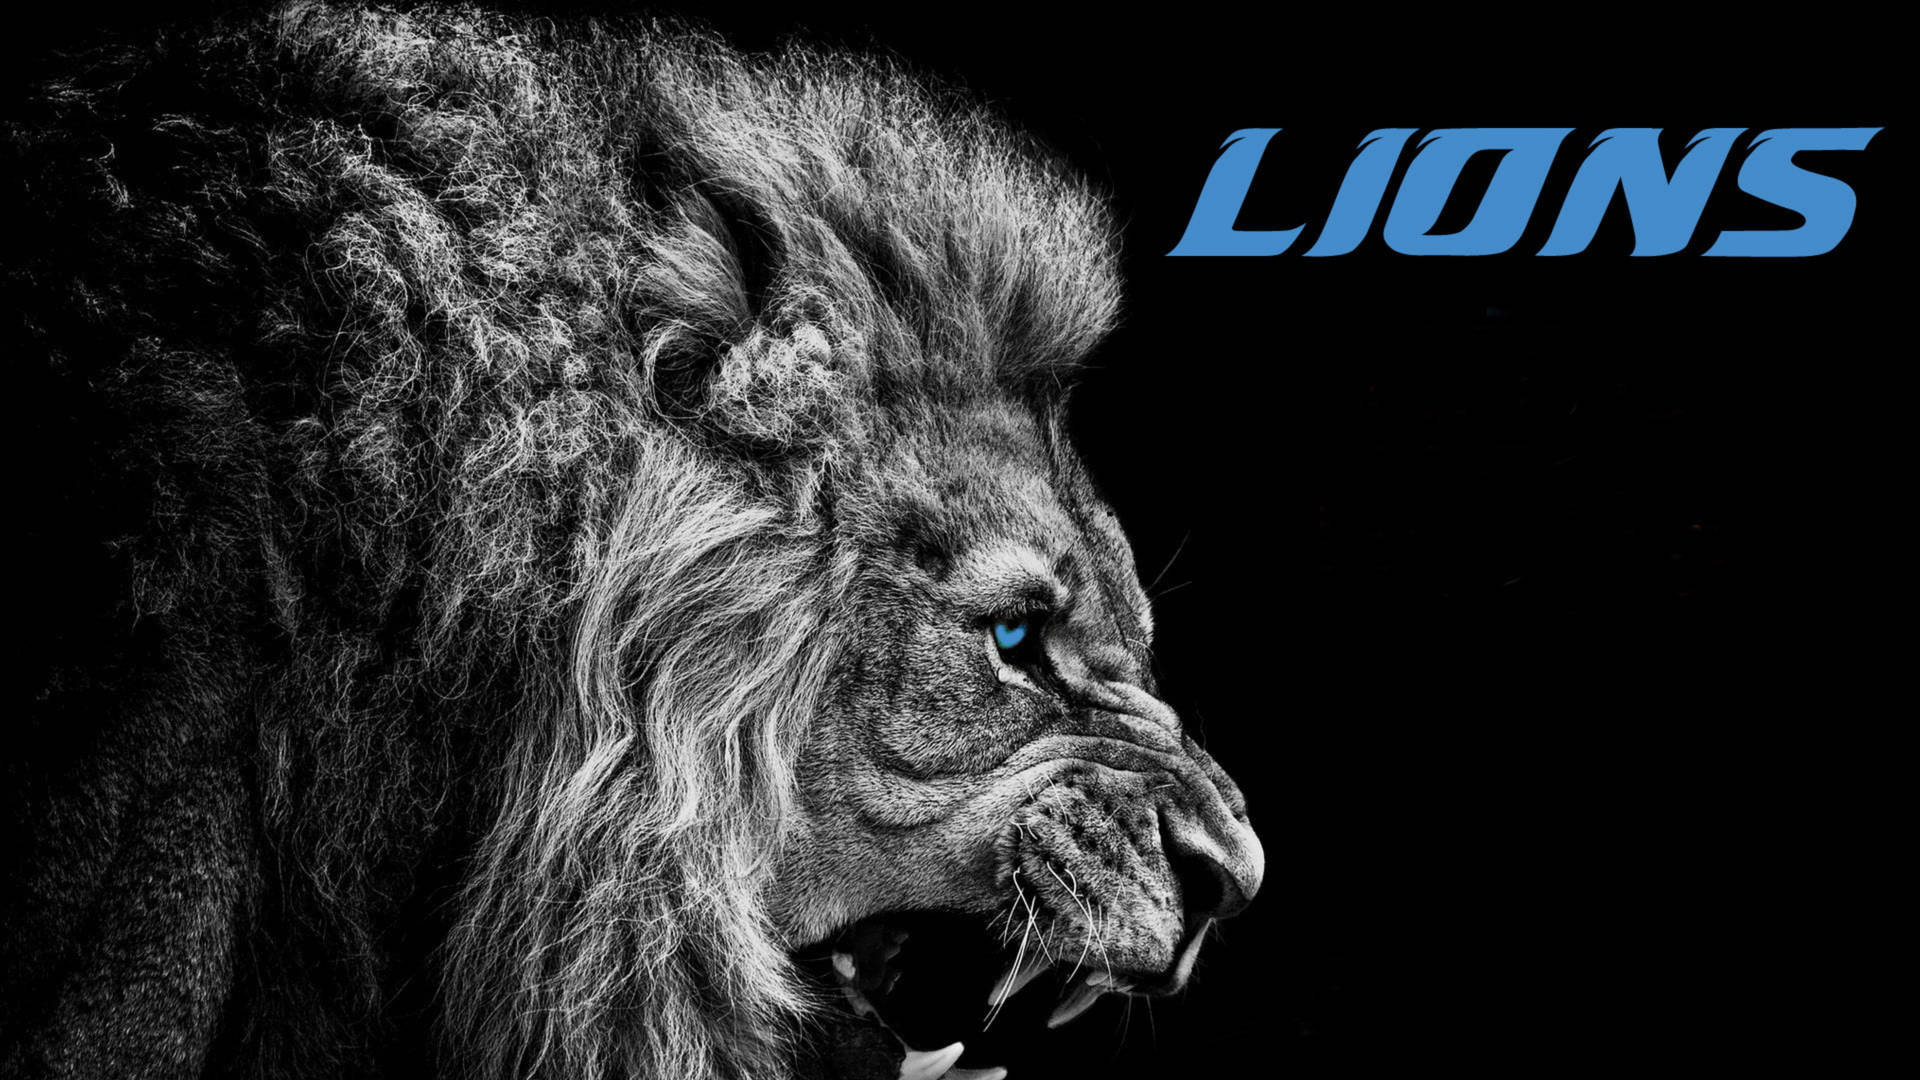 Detroit Lions Lion’s Head Background